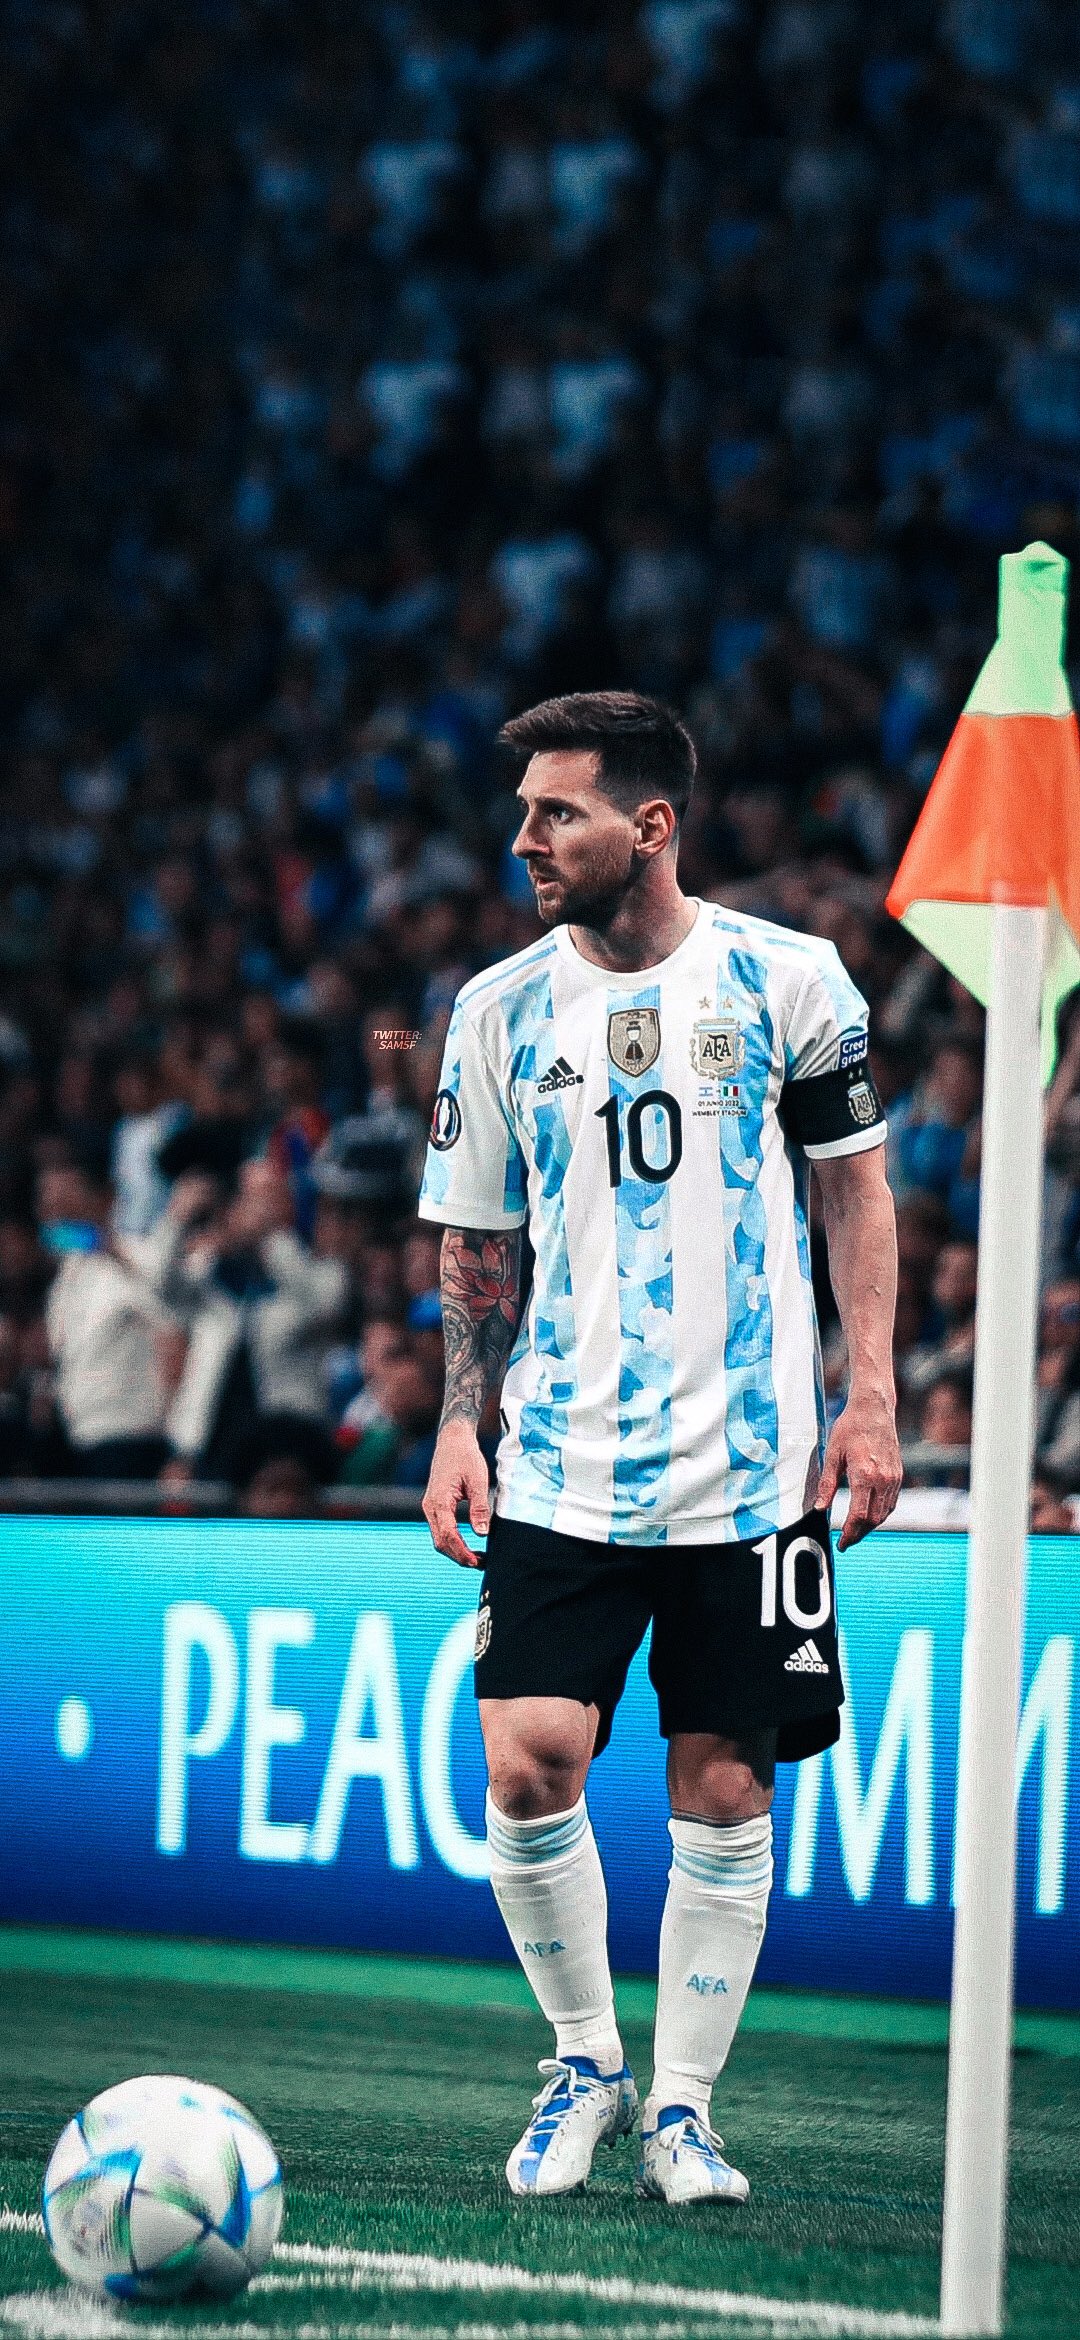 Lionel Messi Twitter wallpapers: Chỉ cần vào trang Twitter cá nhân của Lionel Messi, bạn sẽ khám phá ra những bức ảnh đầy tuyệt vời được đăng tải. Từ đó có thể tải xuống làm hình nền cho điện thoại, máy tính của mình để luôn gần gũi với đại diện cho sự xuất sắc trong lối chơi bóng đá.